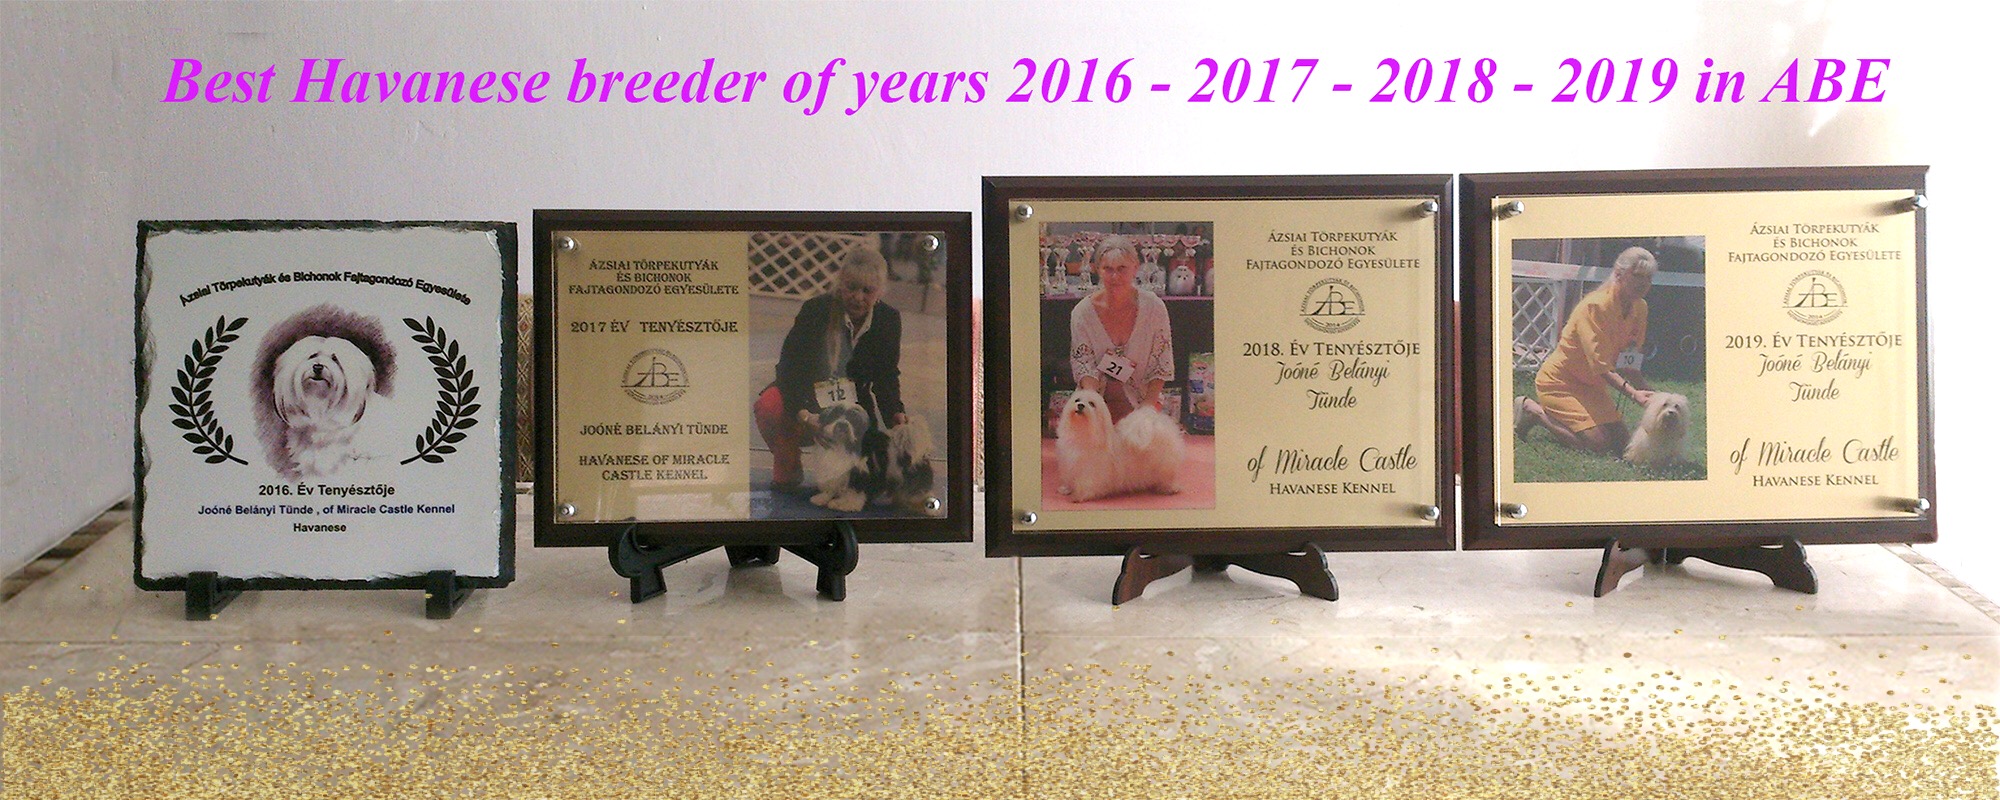 Best Havanese breeder of the year 2016, 2017, 2018, 2019 in ABE#